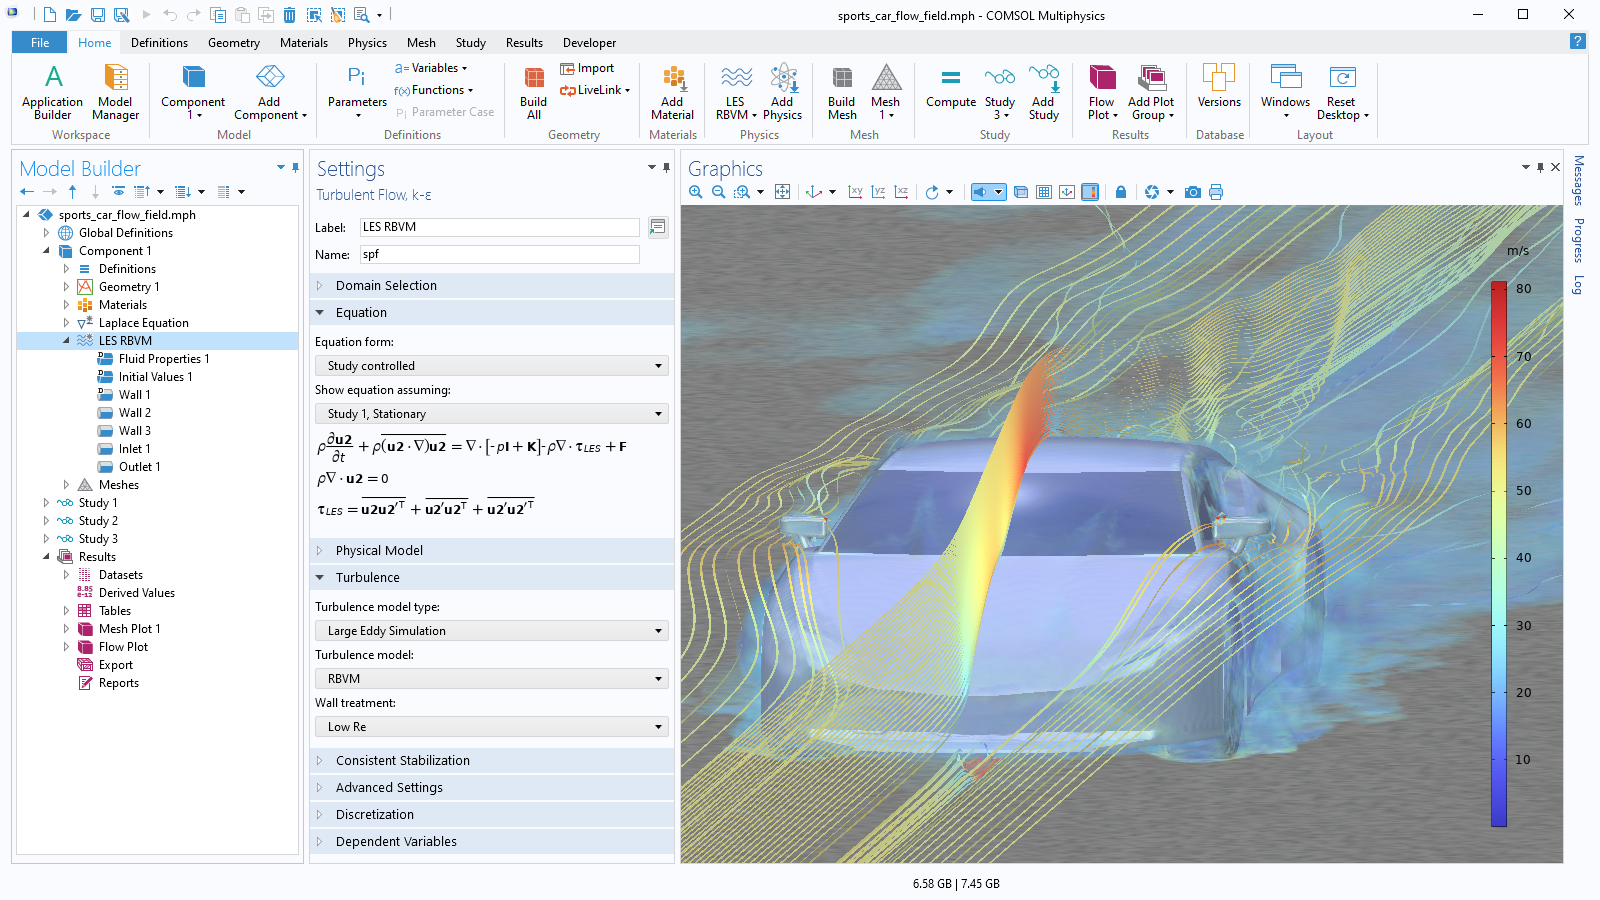 Interfaccia utente di COMSOL Multiphysics che mostra il Model Builder con un nodo Turbolent Flow evidenziato, la finestra Settings corrispondente e un modello di un'auto sportiva nella finestra Graphics.